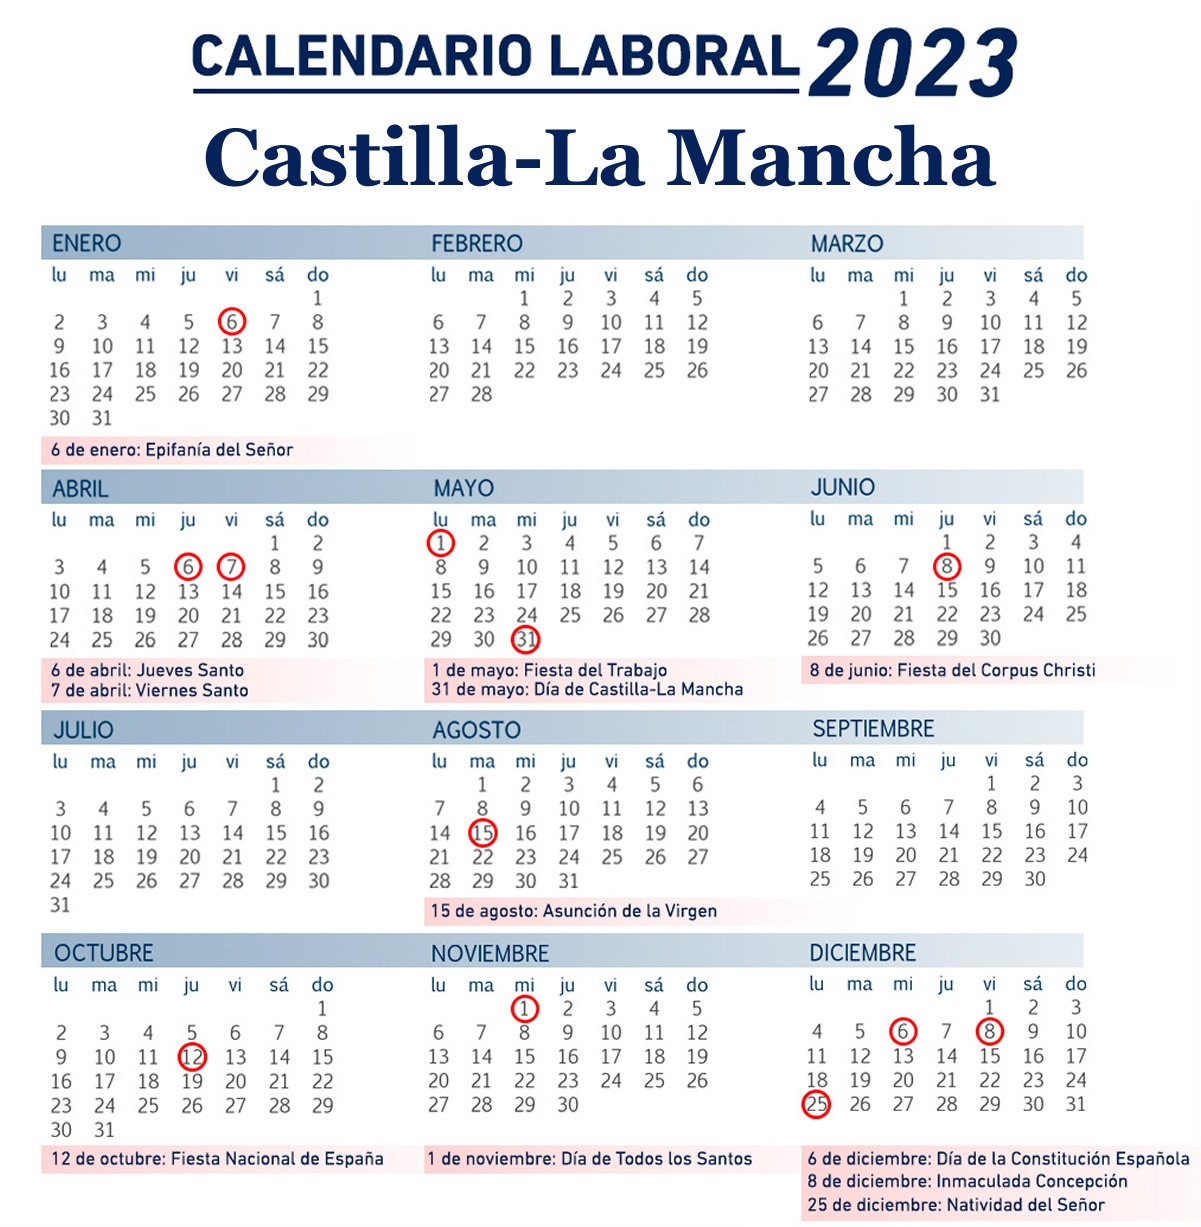 Qué días serán festivos en 2023 en Castilla-La Mancha y España